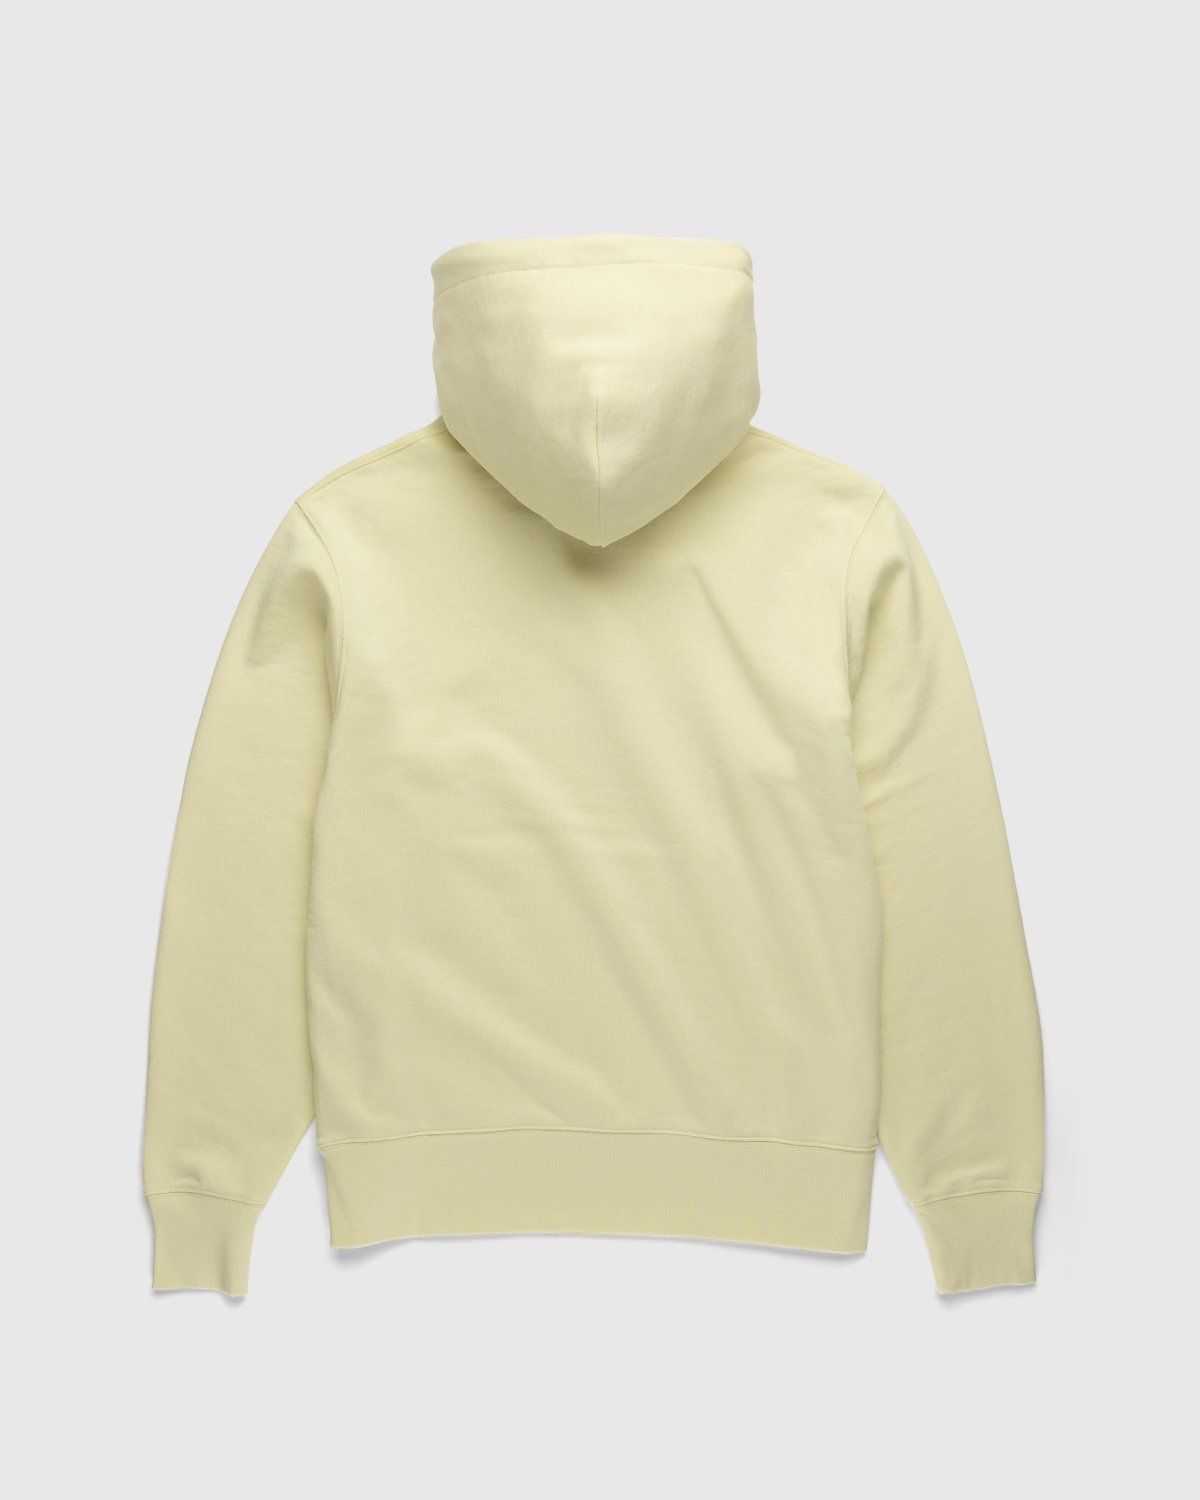 Acne Studios – Organic Cotton Hooded Sweatshirt Vanilla Yellow - Hoodies - Yellow - Image 2